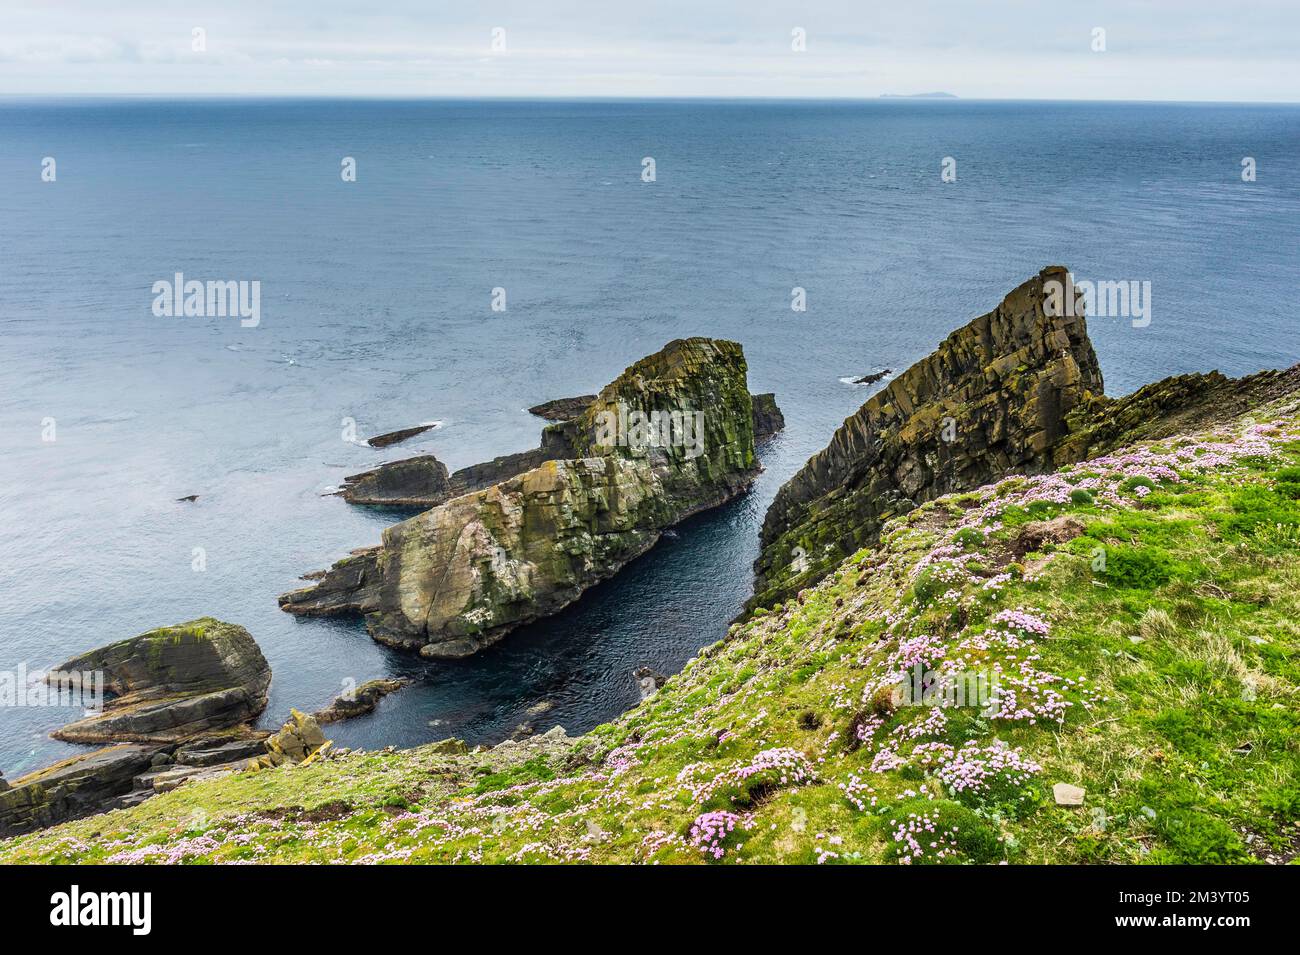 Los acantilados escarpados de la cabeza de Sumburgh, Islas Shetland, Reino Unido Foto de stock